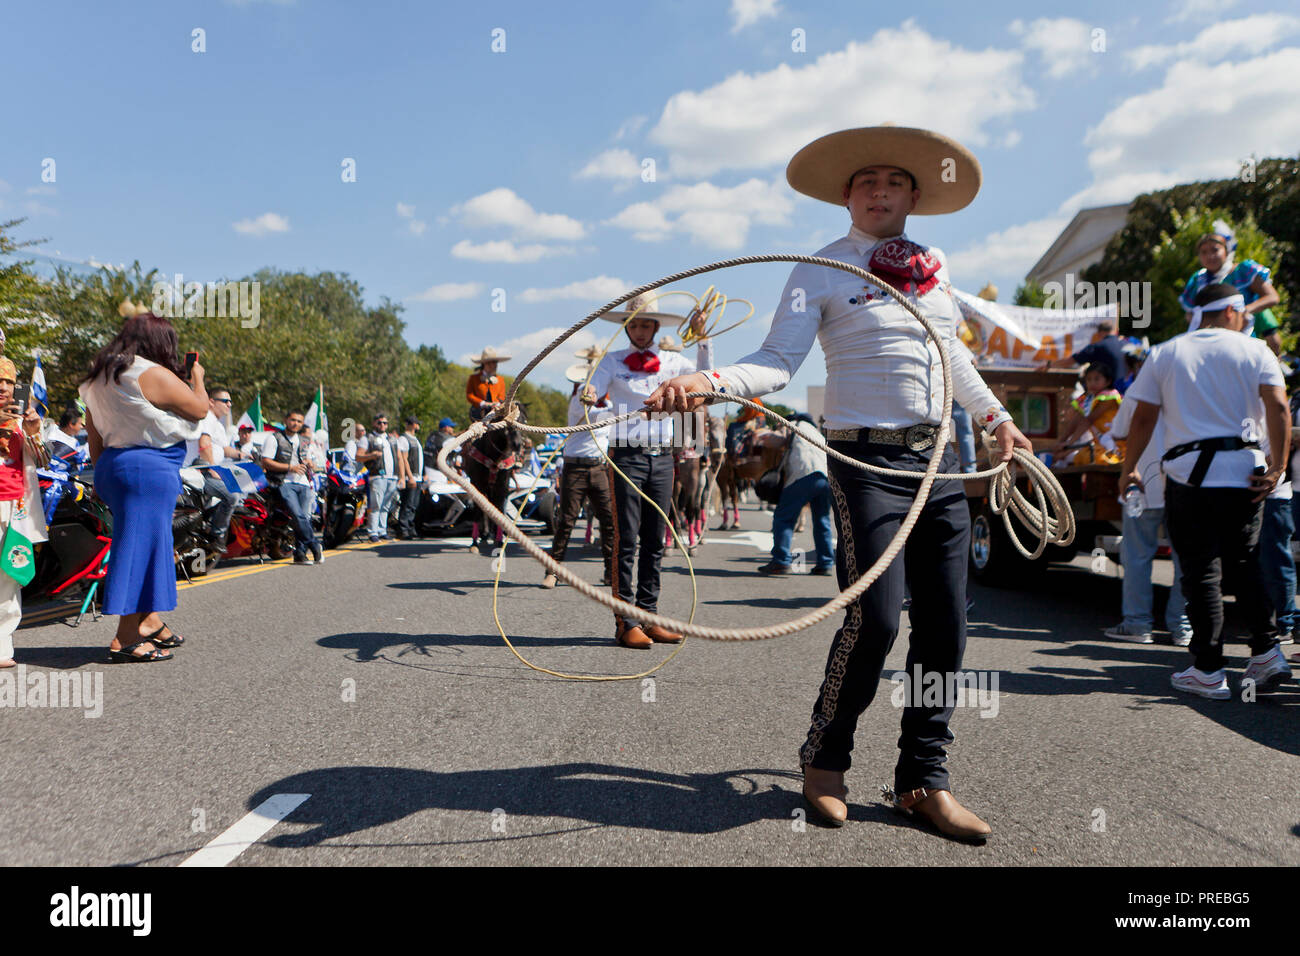 A Vaquero (Mexican cowboy) spinning a lasso Stock Photo